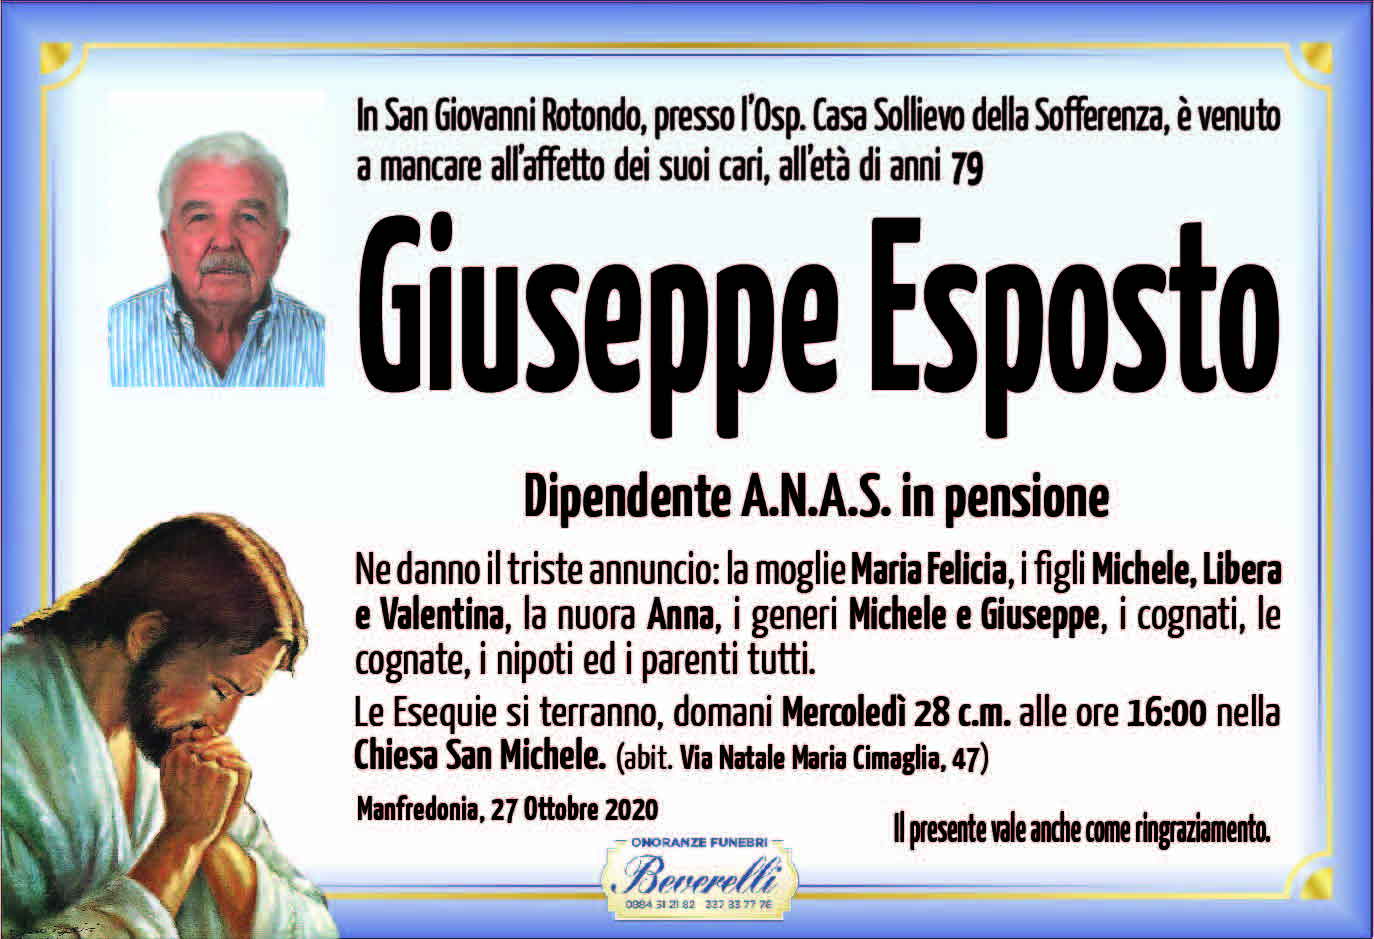 Giuseppe Esposto